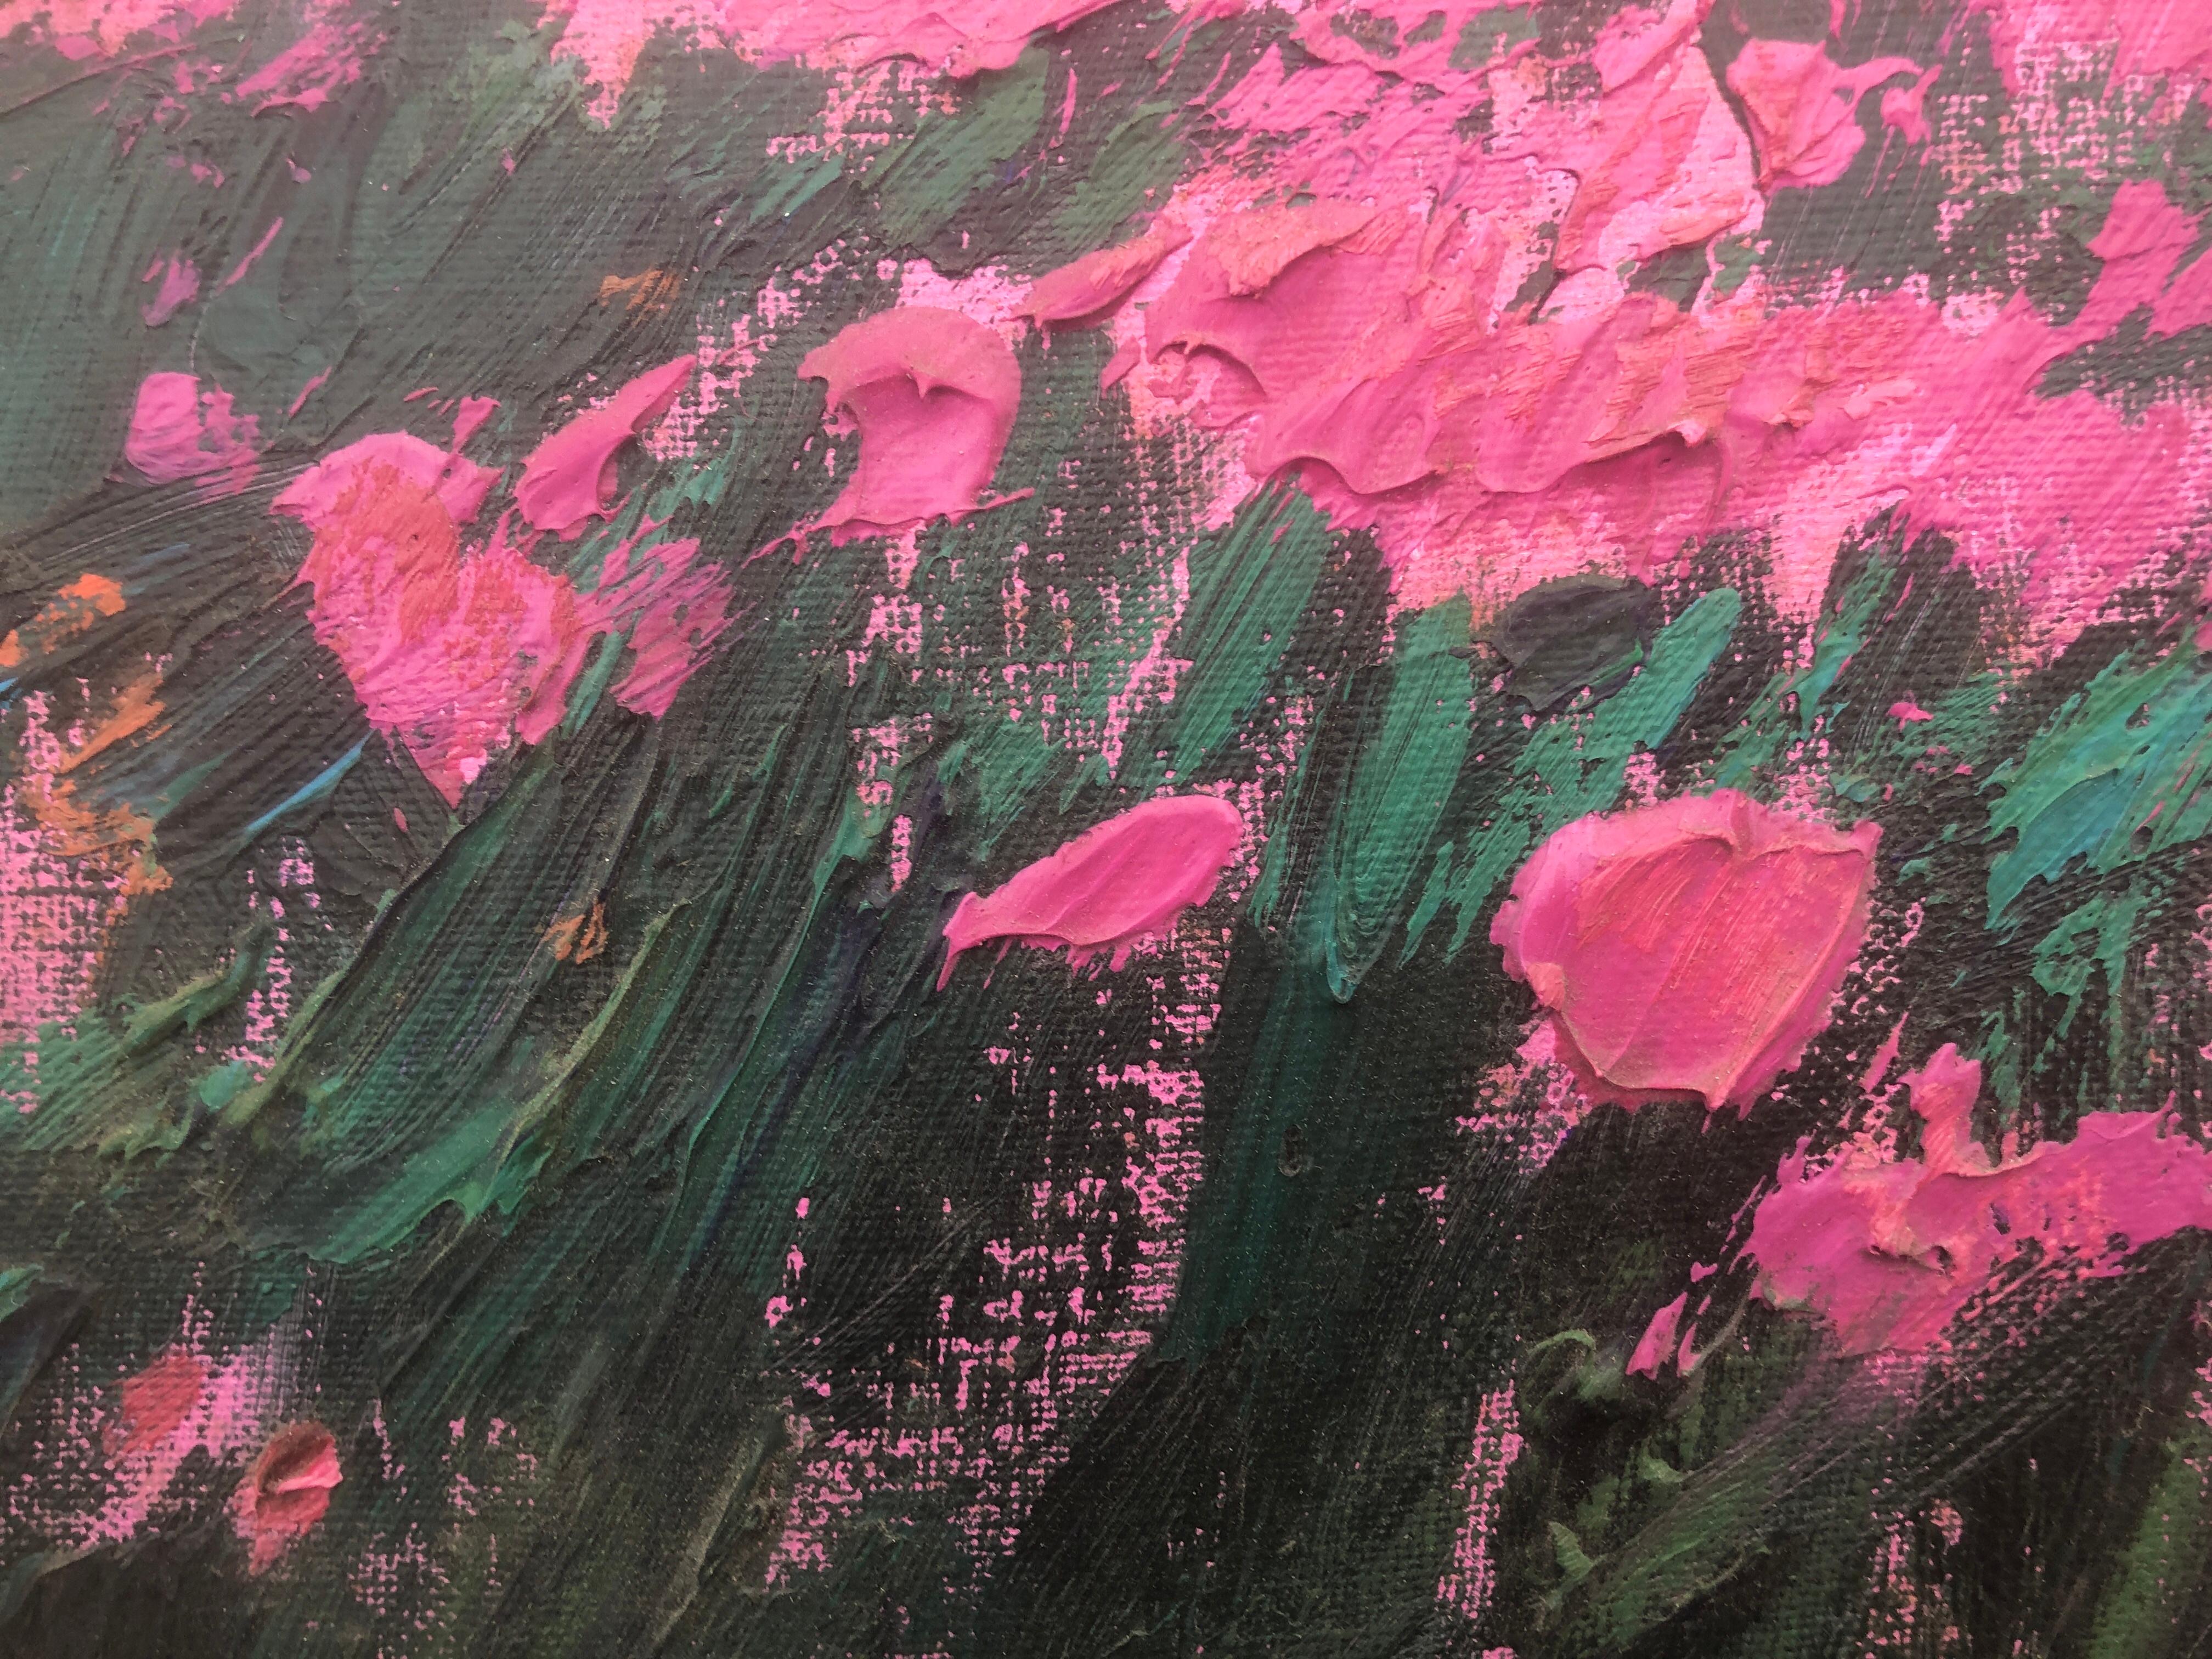 Field of flowers Öl auf Leinwand Gemälde spanische Landschaft, Ölgemälde (Post-Impressionismus), Painting, von Ramon Vila